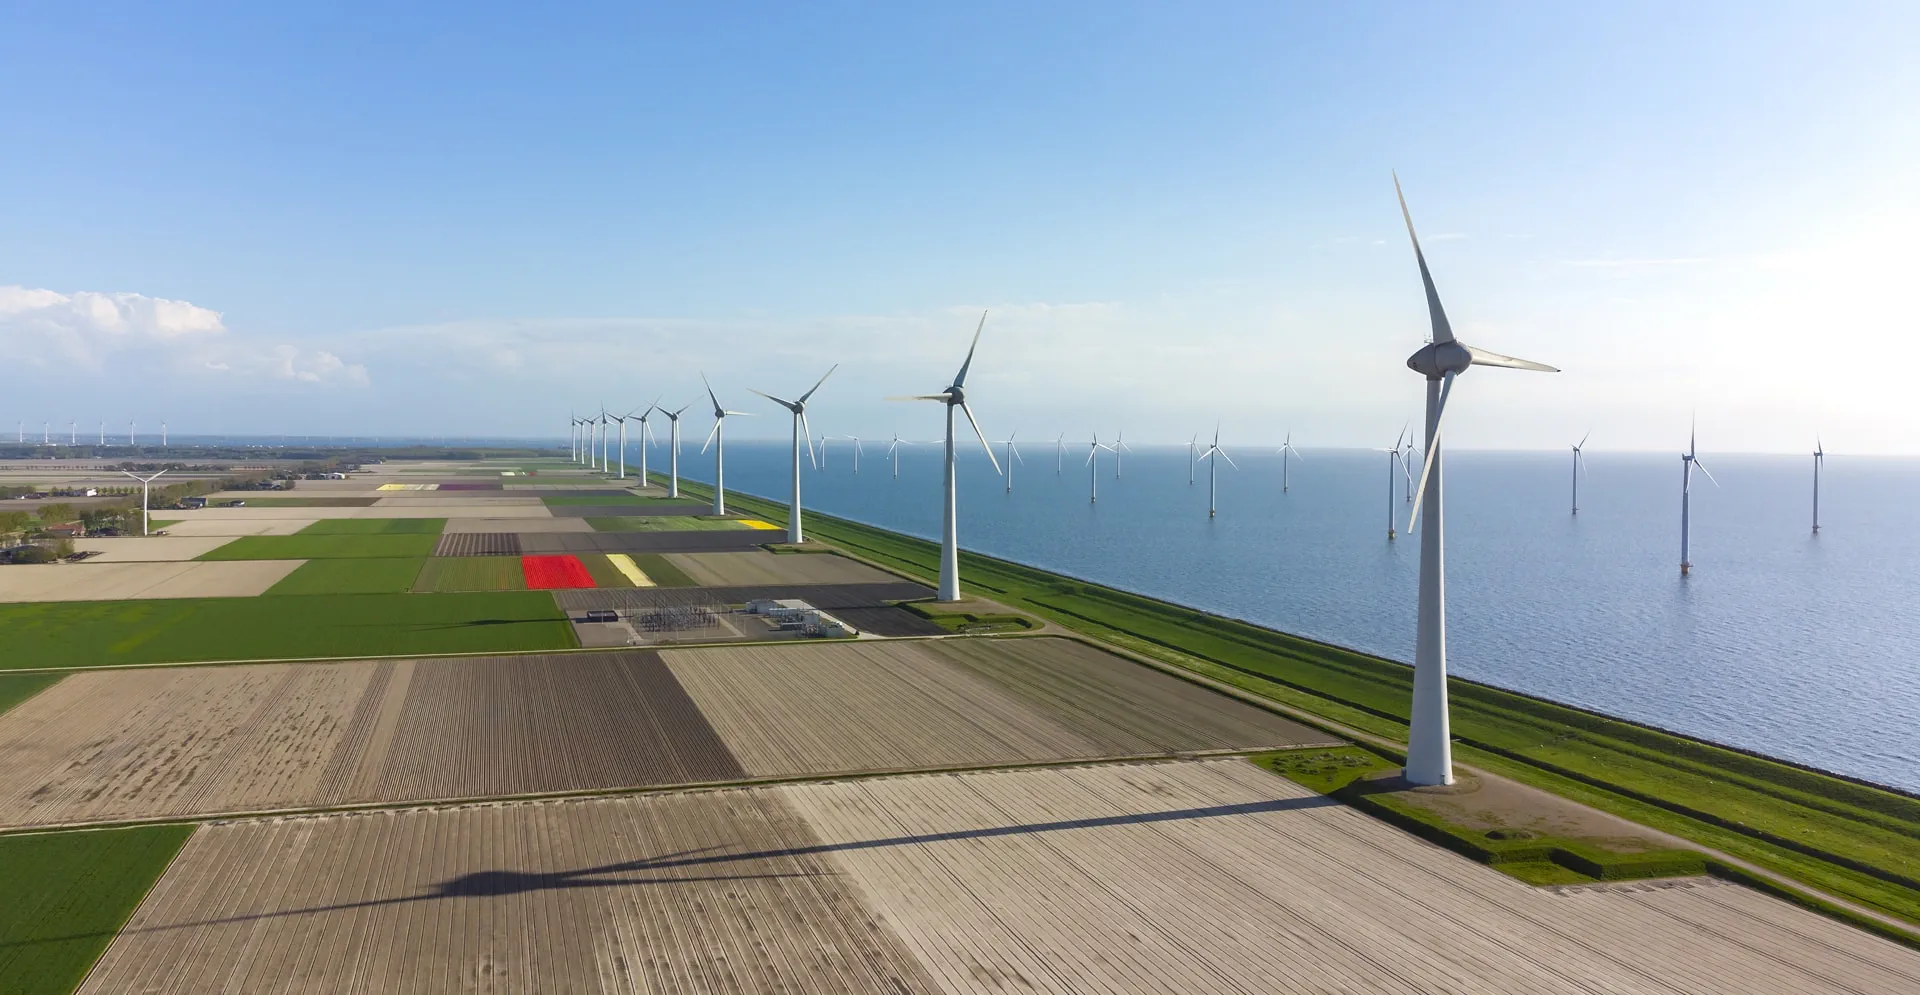 Wind turbines on the seaside farm